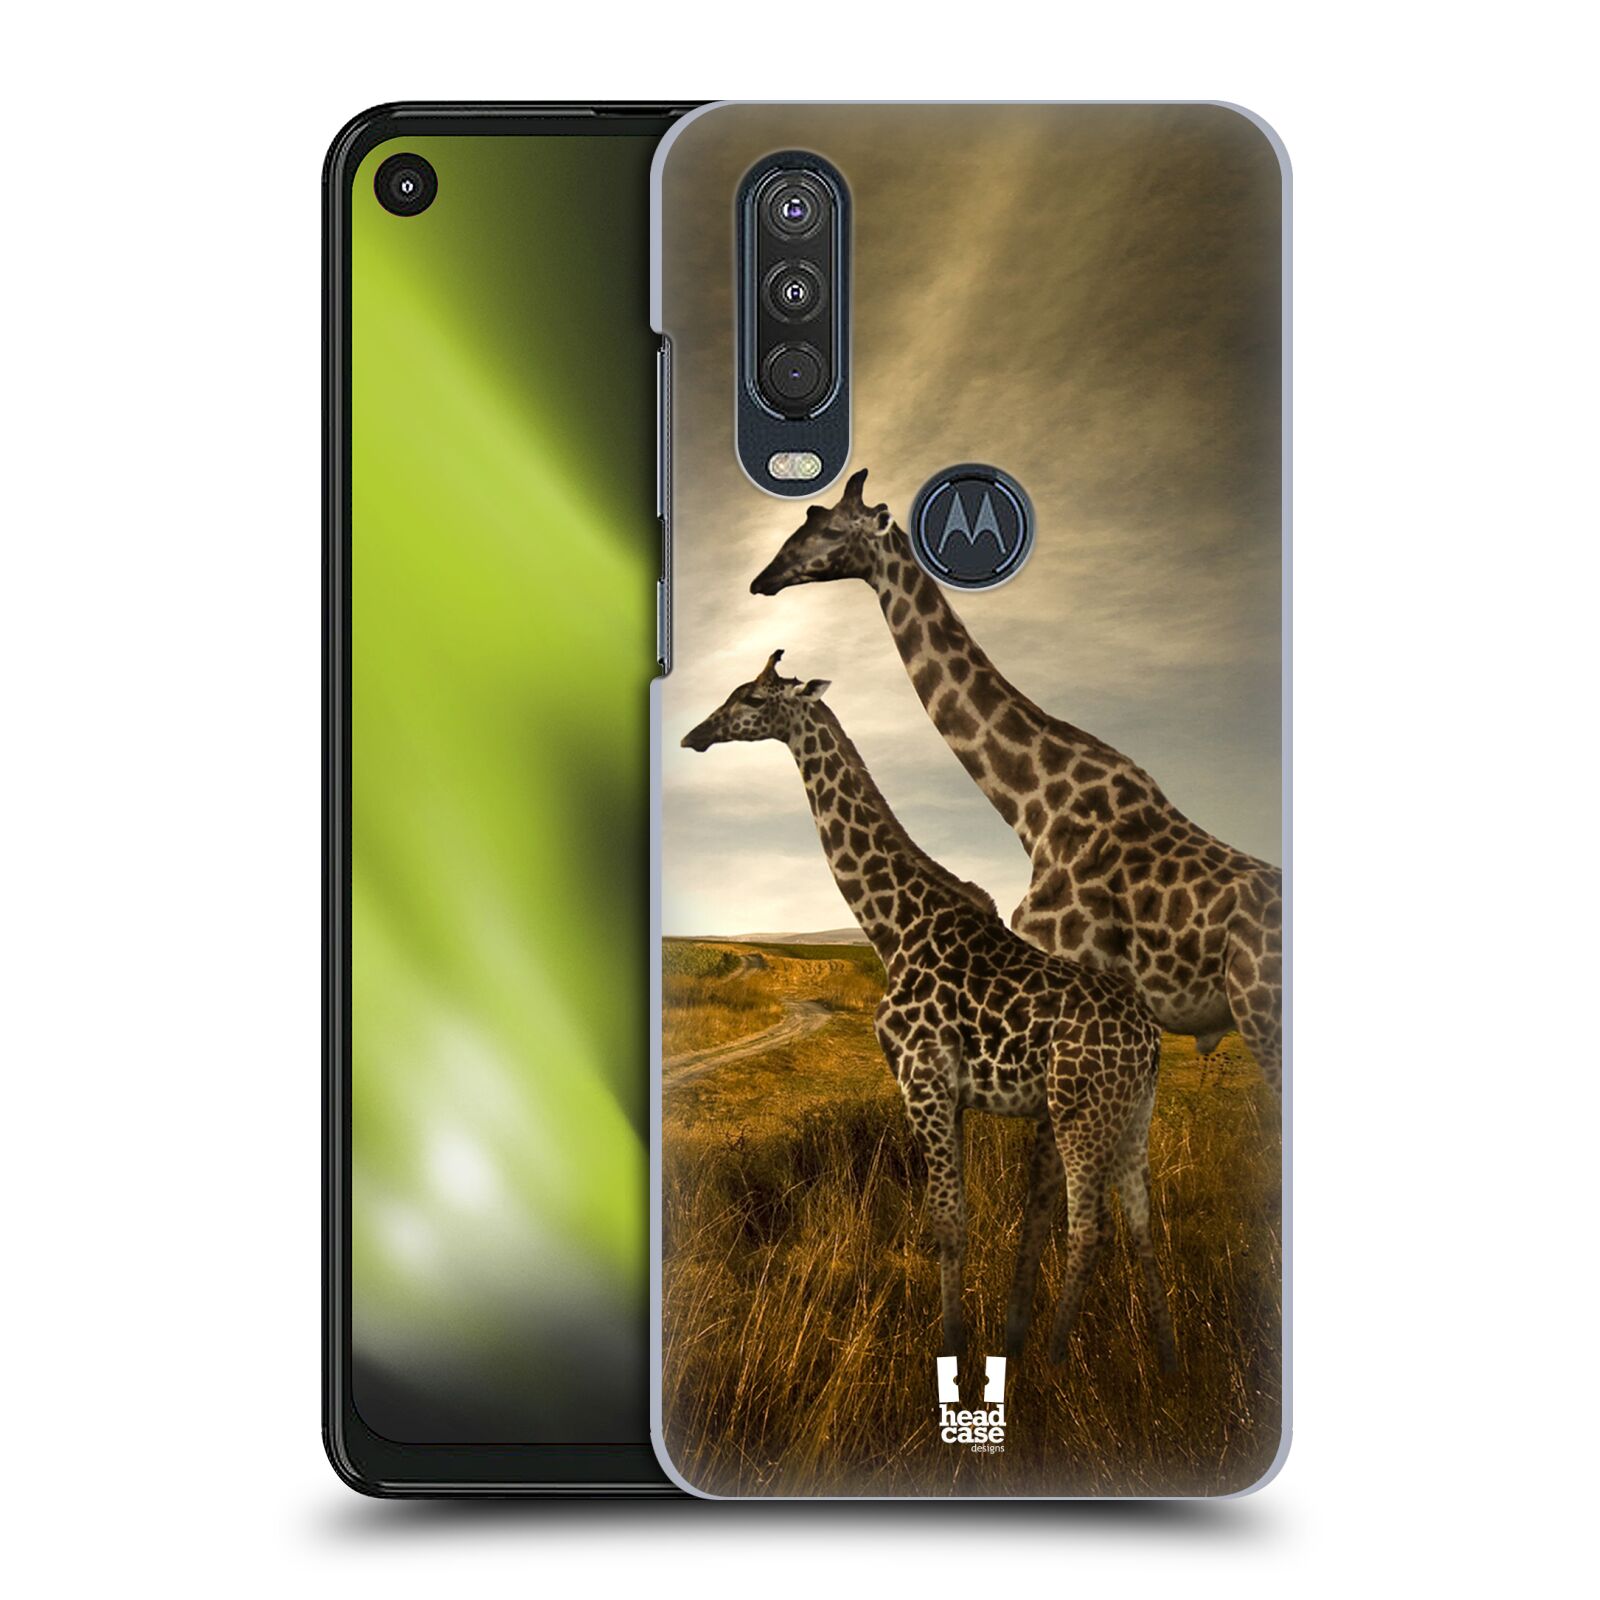 Zadní obal pro mobil Motorola One Action - HEAD CASE - Svět zvířat žirafy